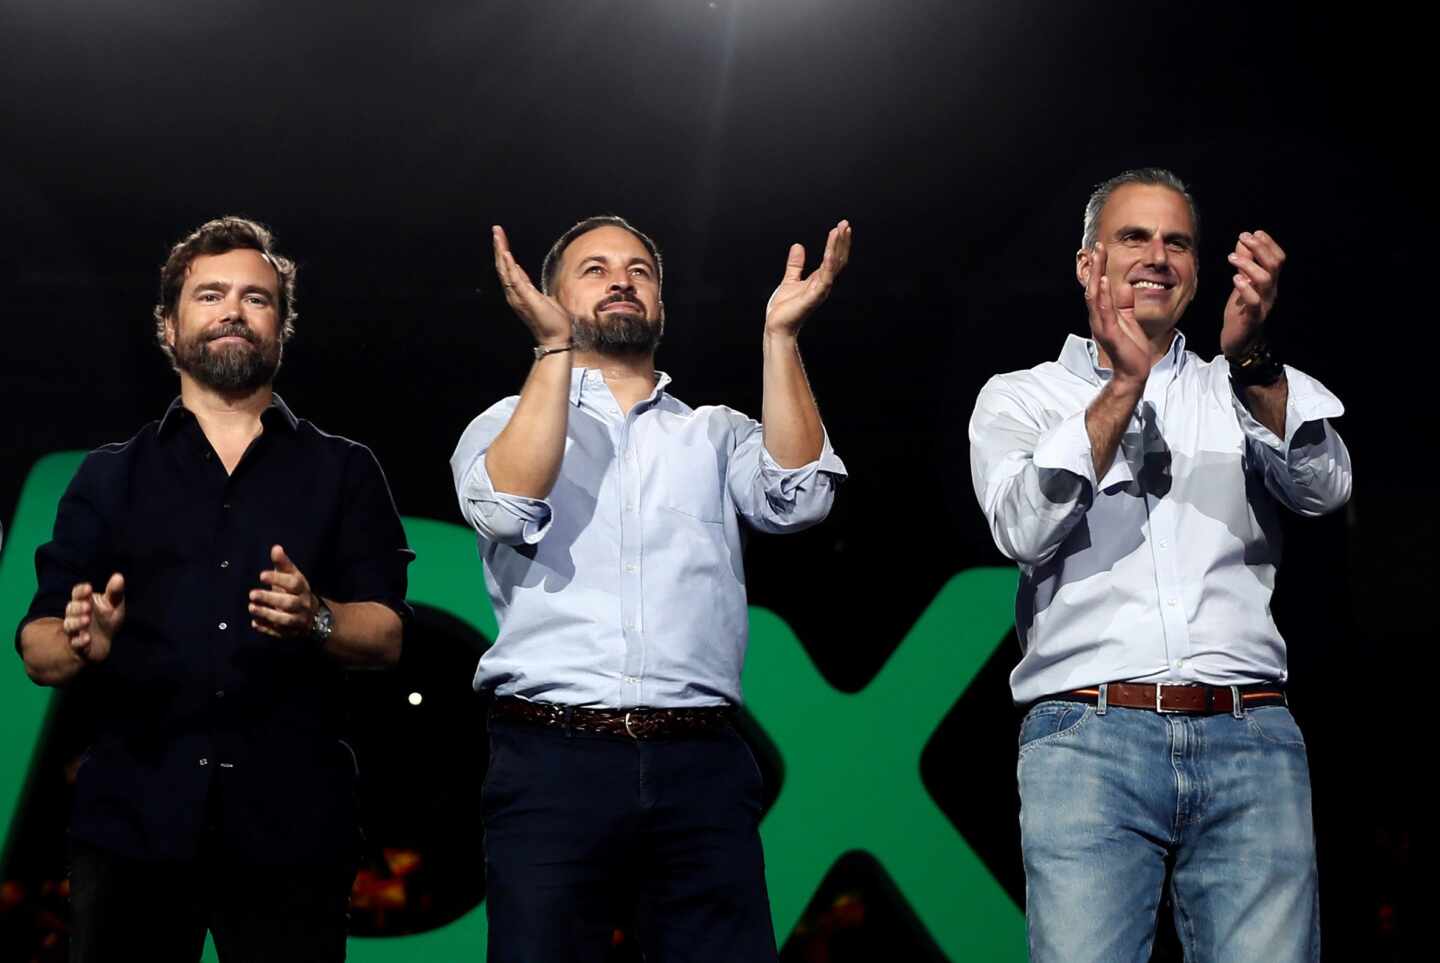 Vox ultima una gran cumbre en Madrid con Orbán y Le Pen en plena campaña electoral